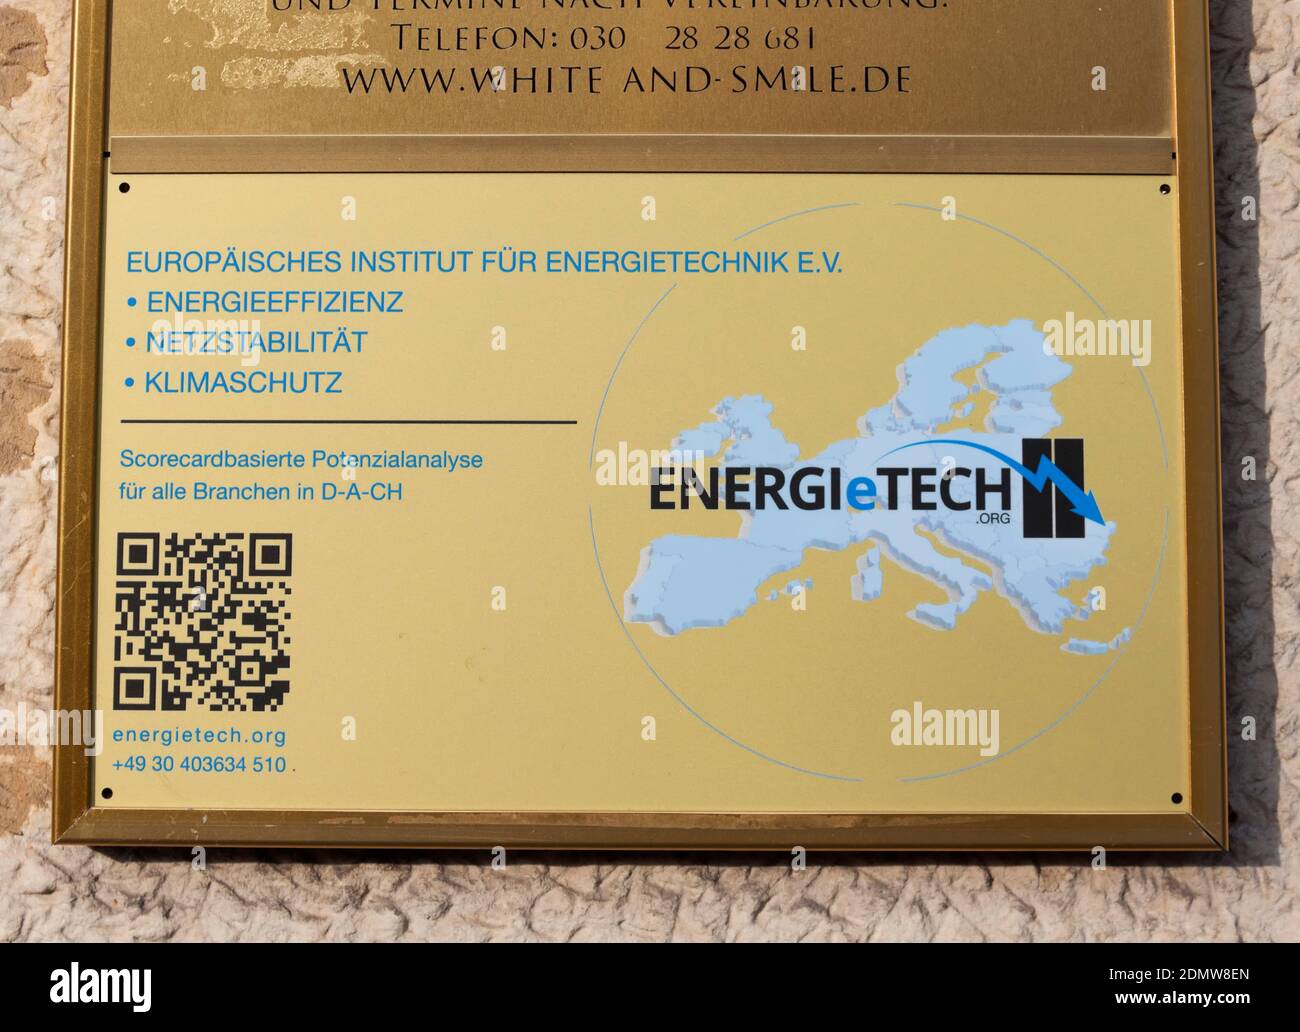 Energietech, European Institute for Energy Technology e.V., Berlin Stock Photo